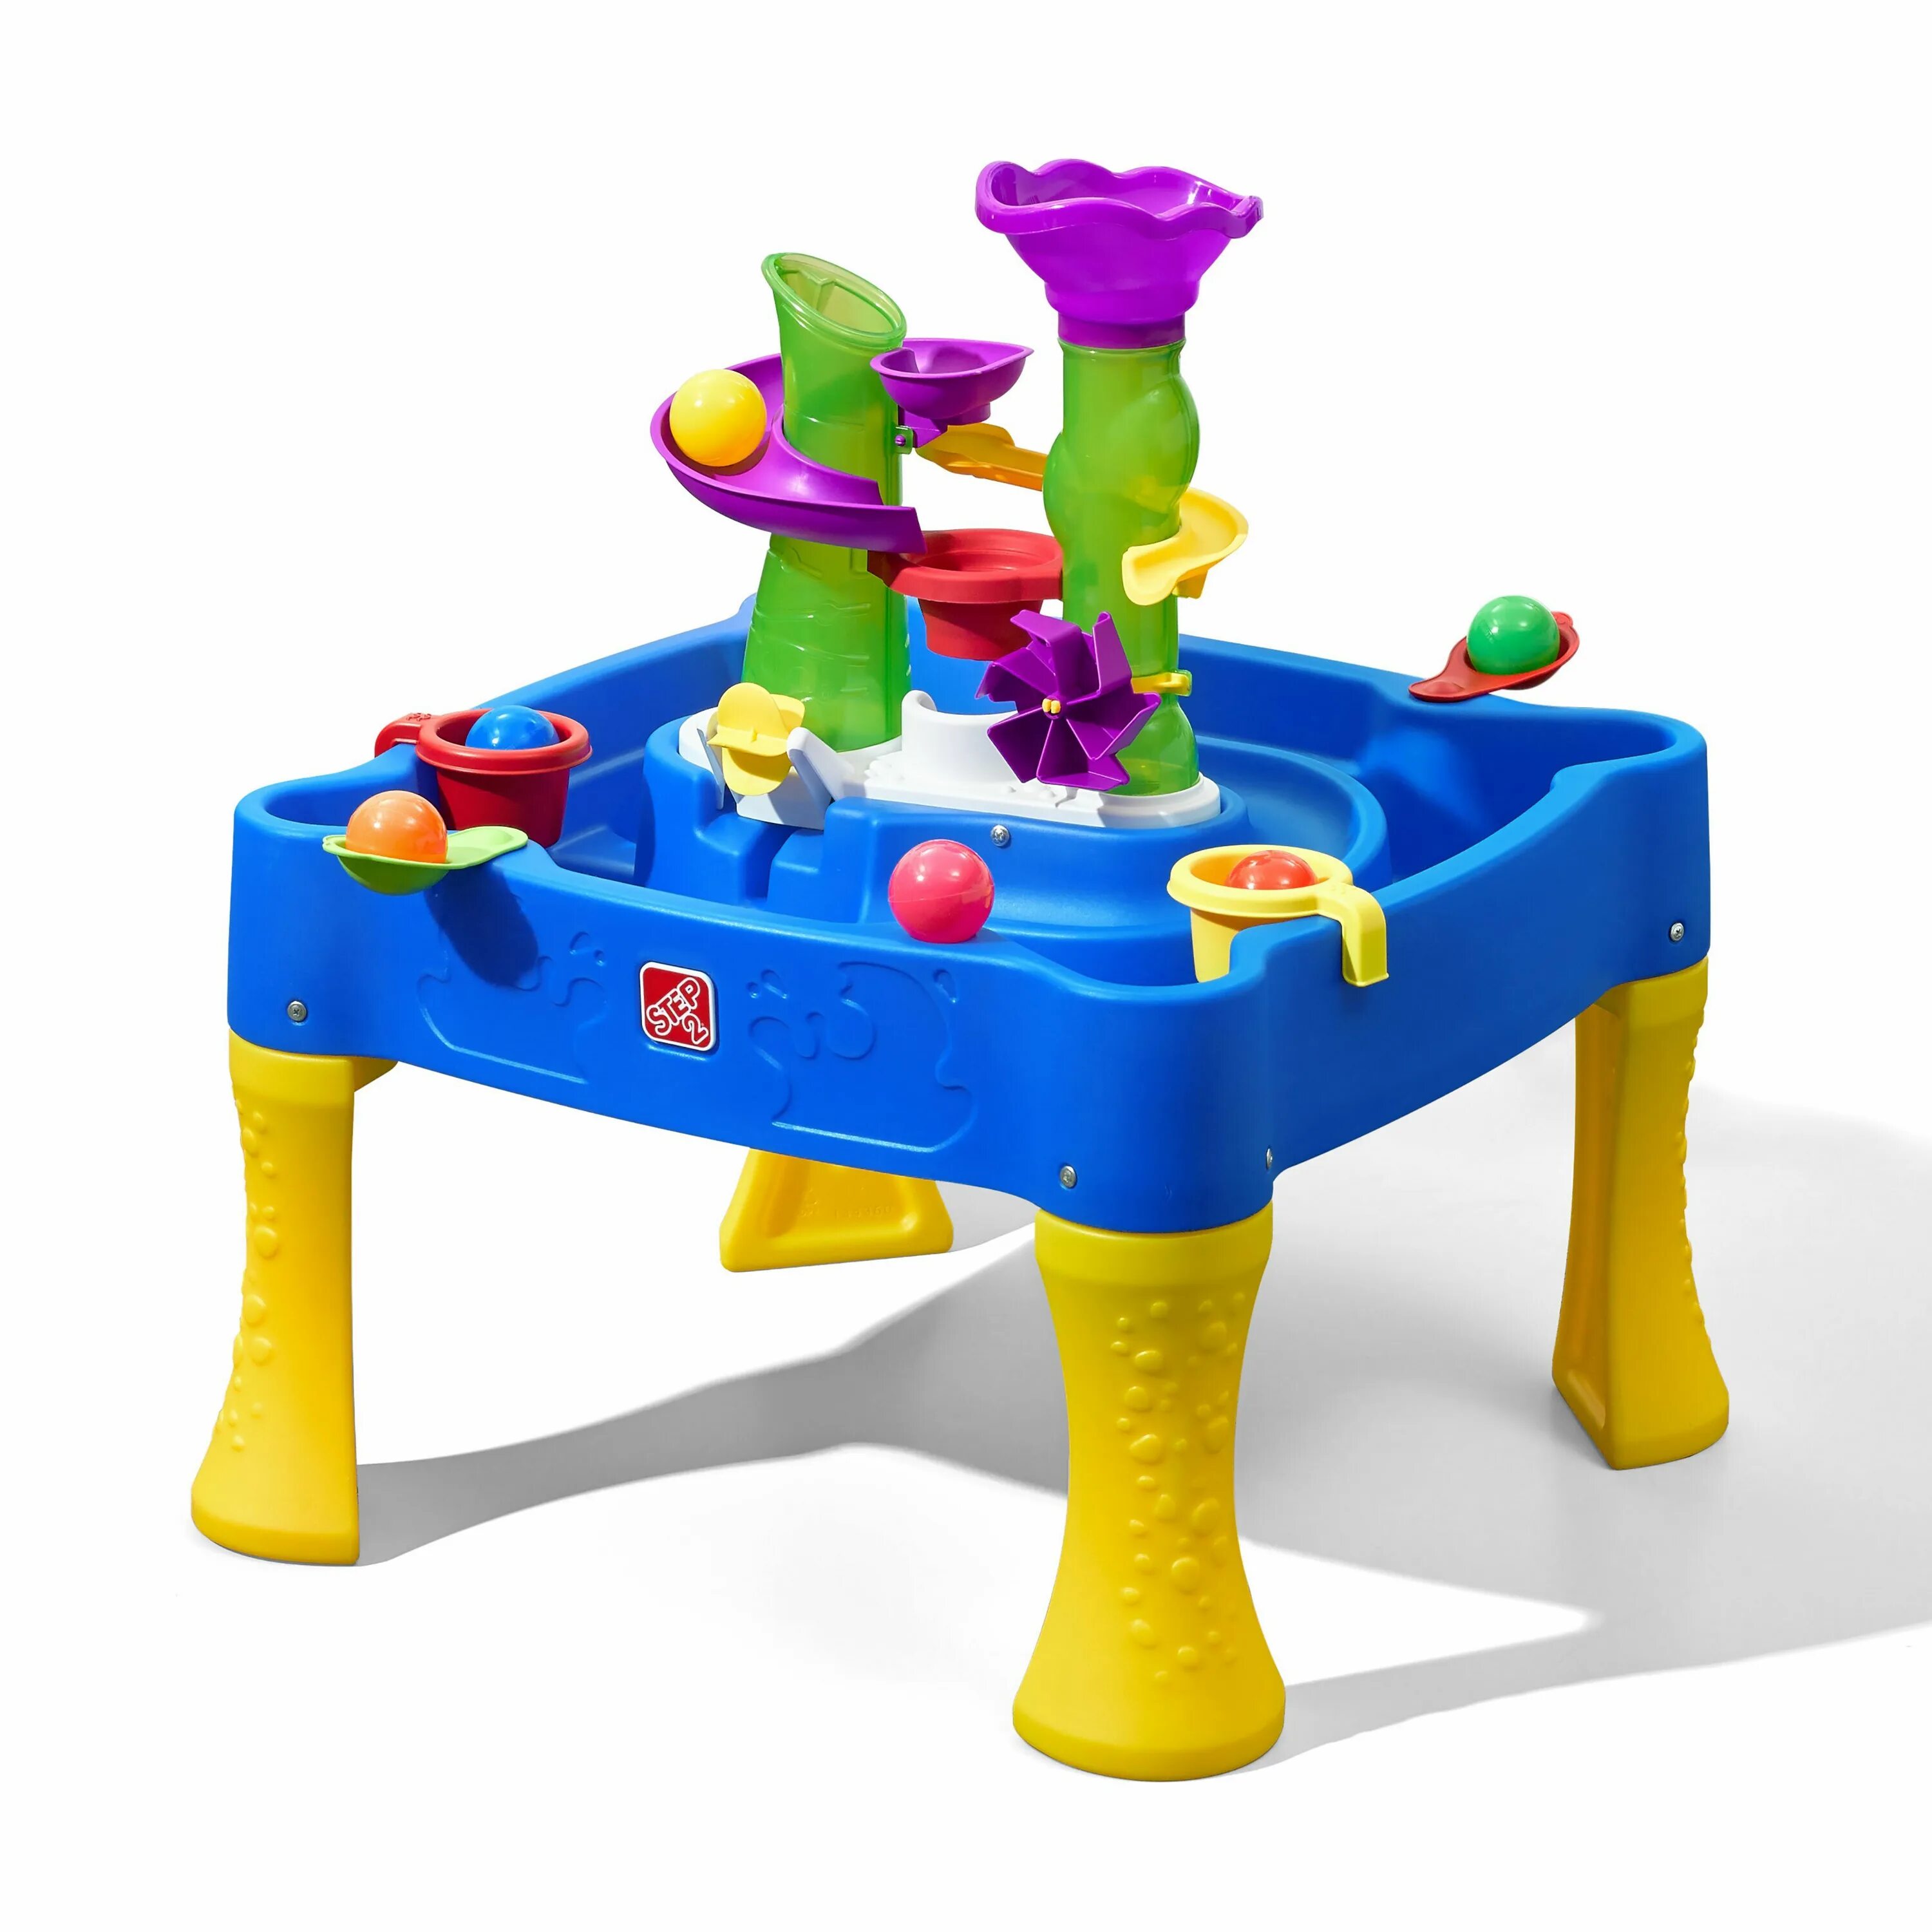 Стол для игр с водой. Столик для игр step2 водопад. Песочница-столик step2 787800. Столик с водой для детей игровой. Водный столик для детей.